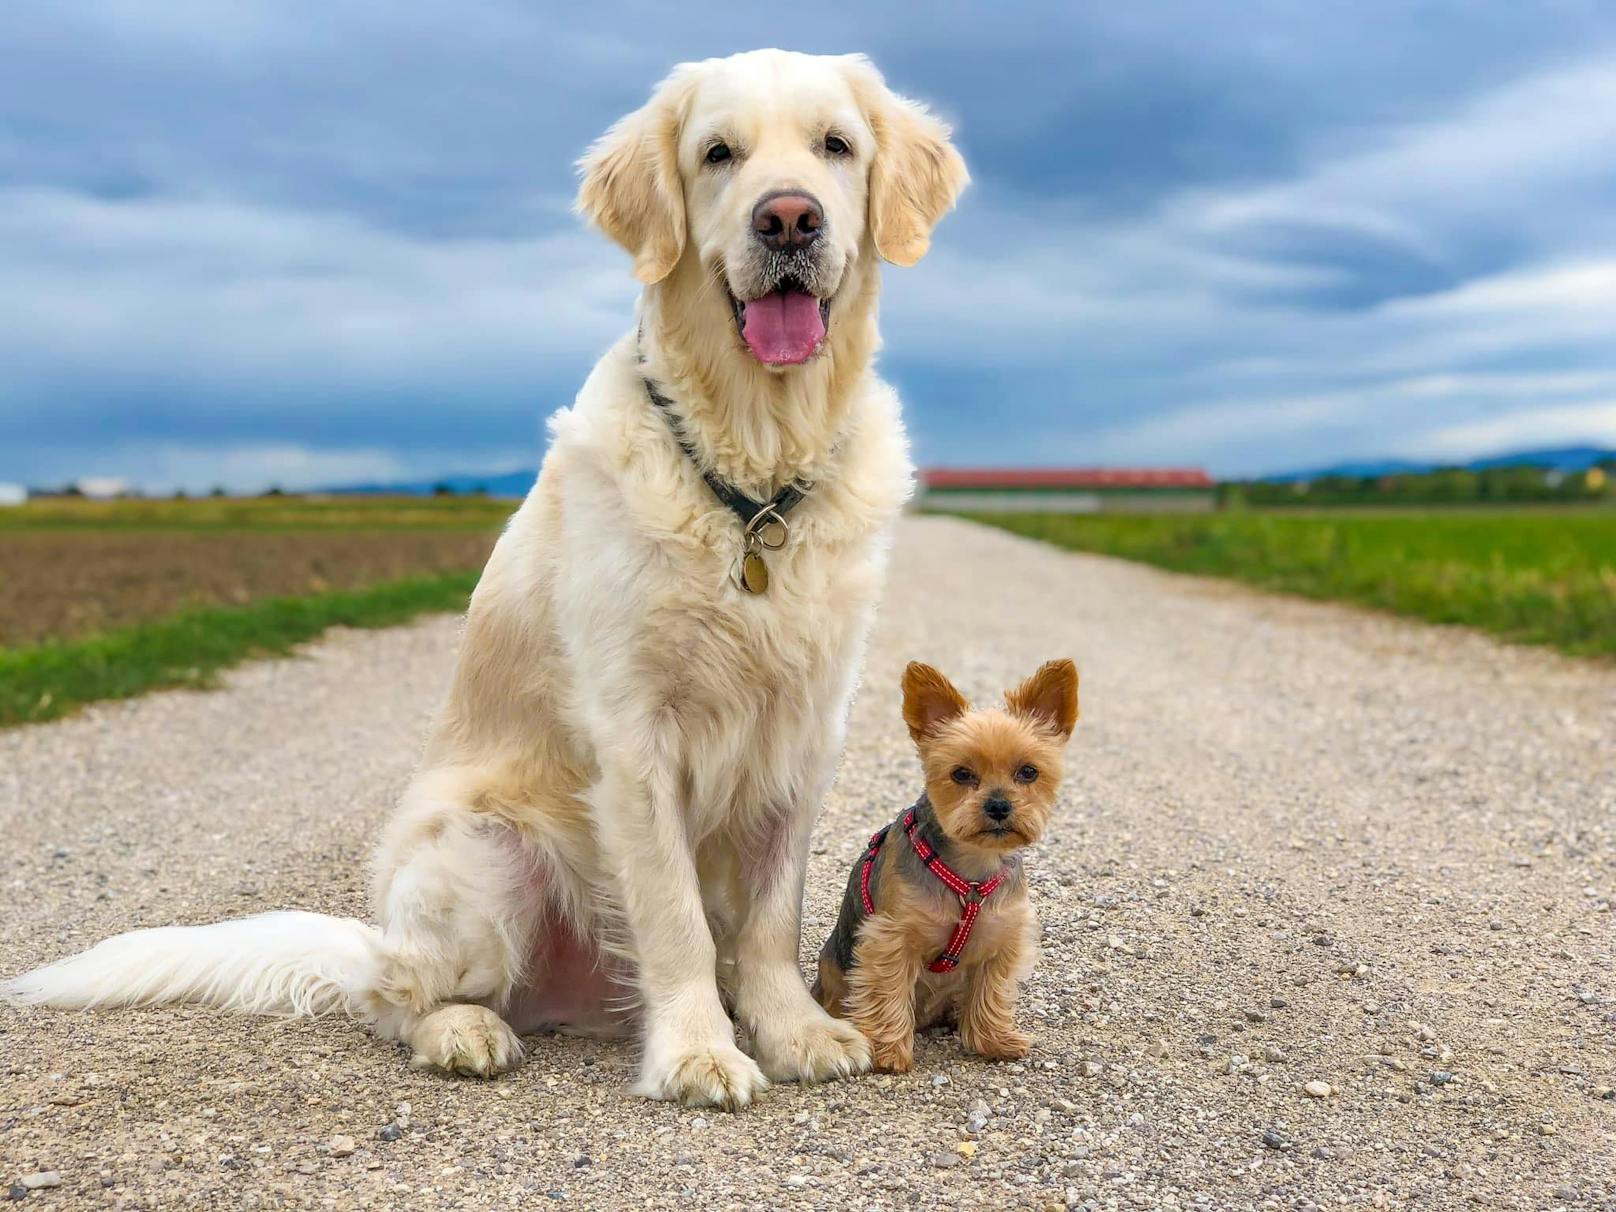 Blutspender Jon (l.) und Yorkshire Terrier Lily gemeinsam vor der Tragödie beim Gassigehen.